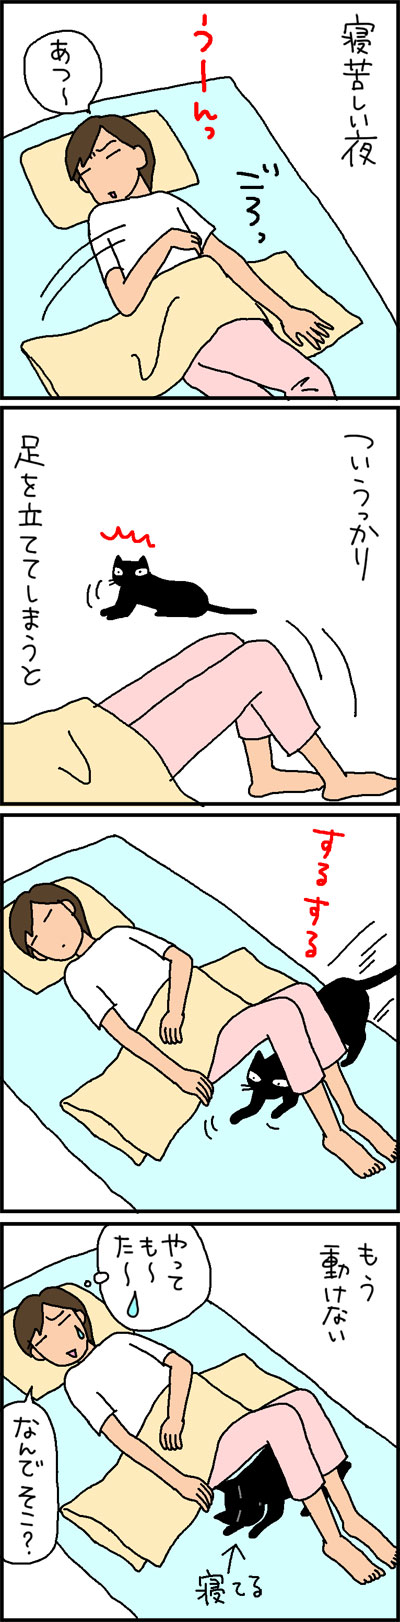 猫と一緒に寝る4コマ猫漫画